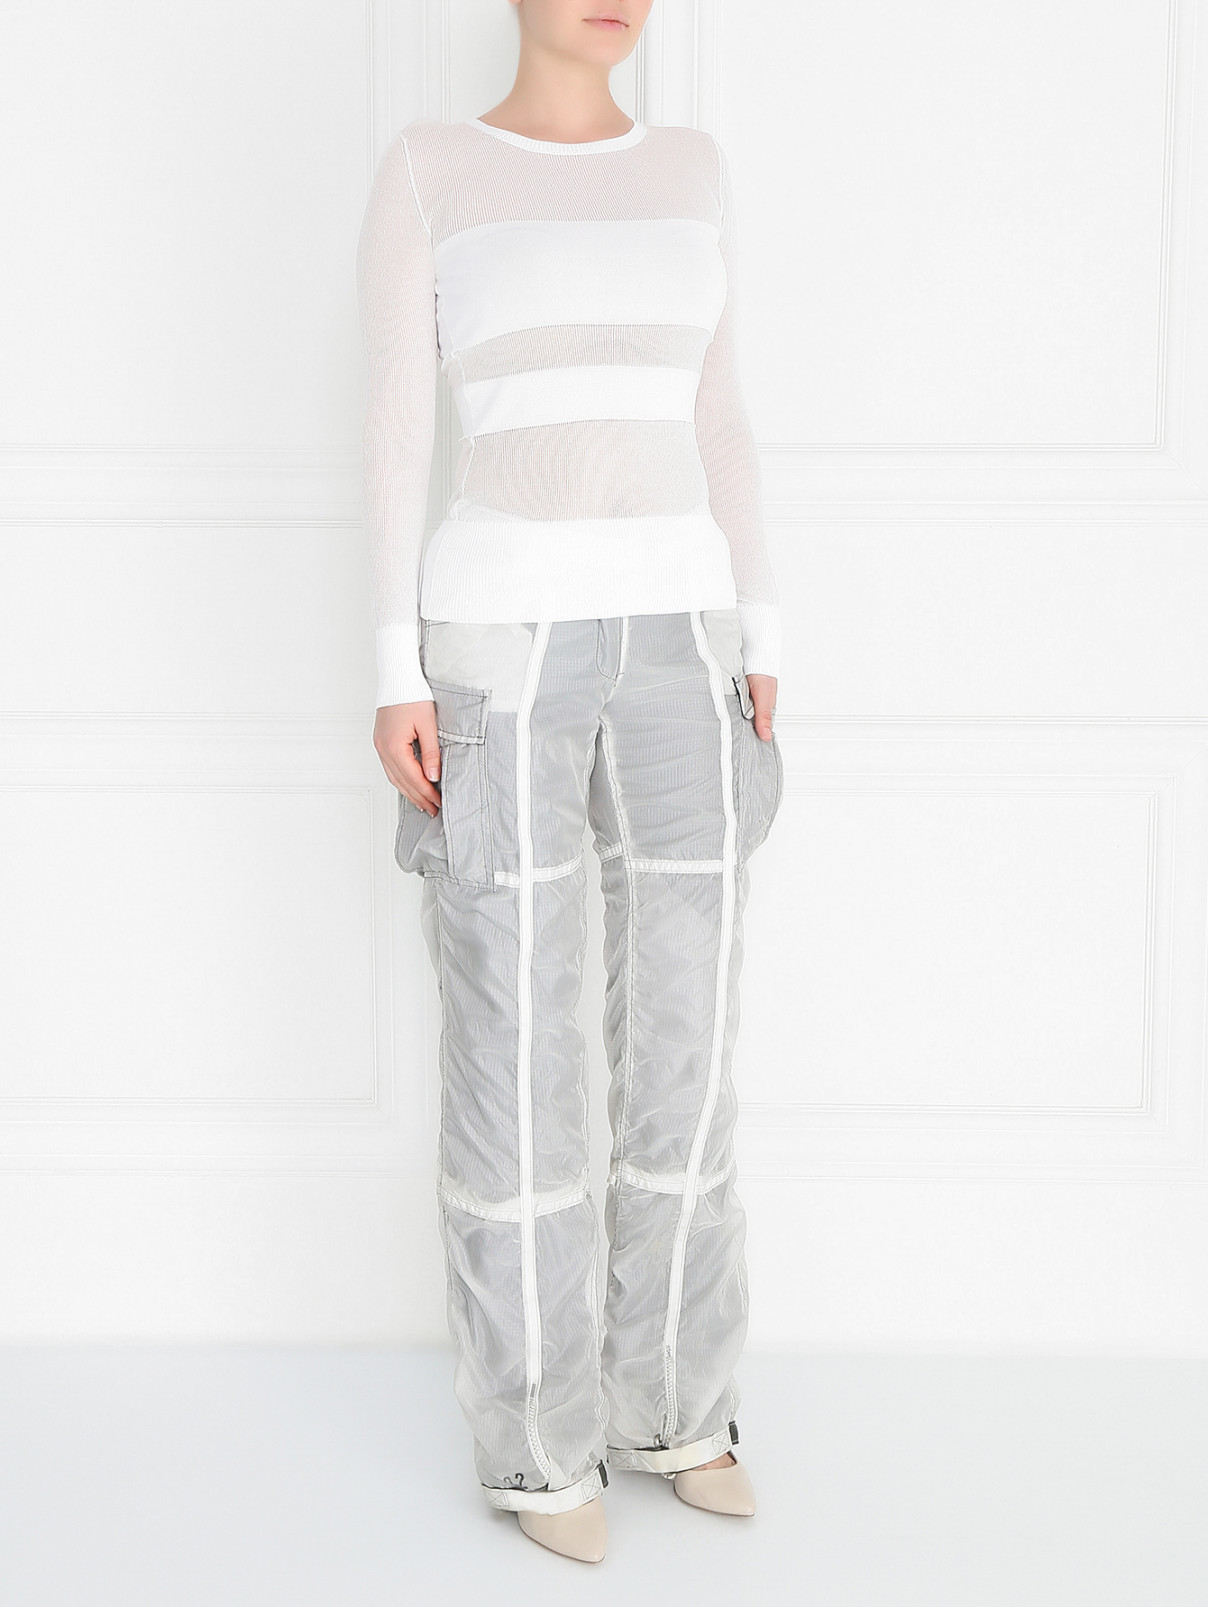 Свободные брюки с боковыми карманами Maurizio Pecoraro  –  Модель Общий вид  – Цвет:  Серый